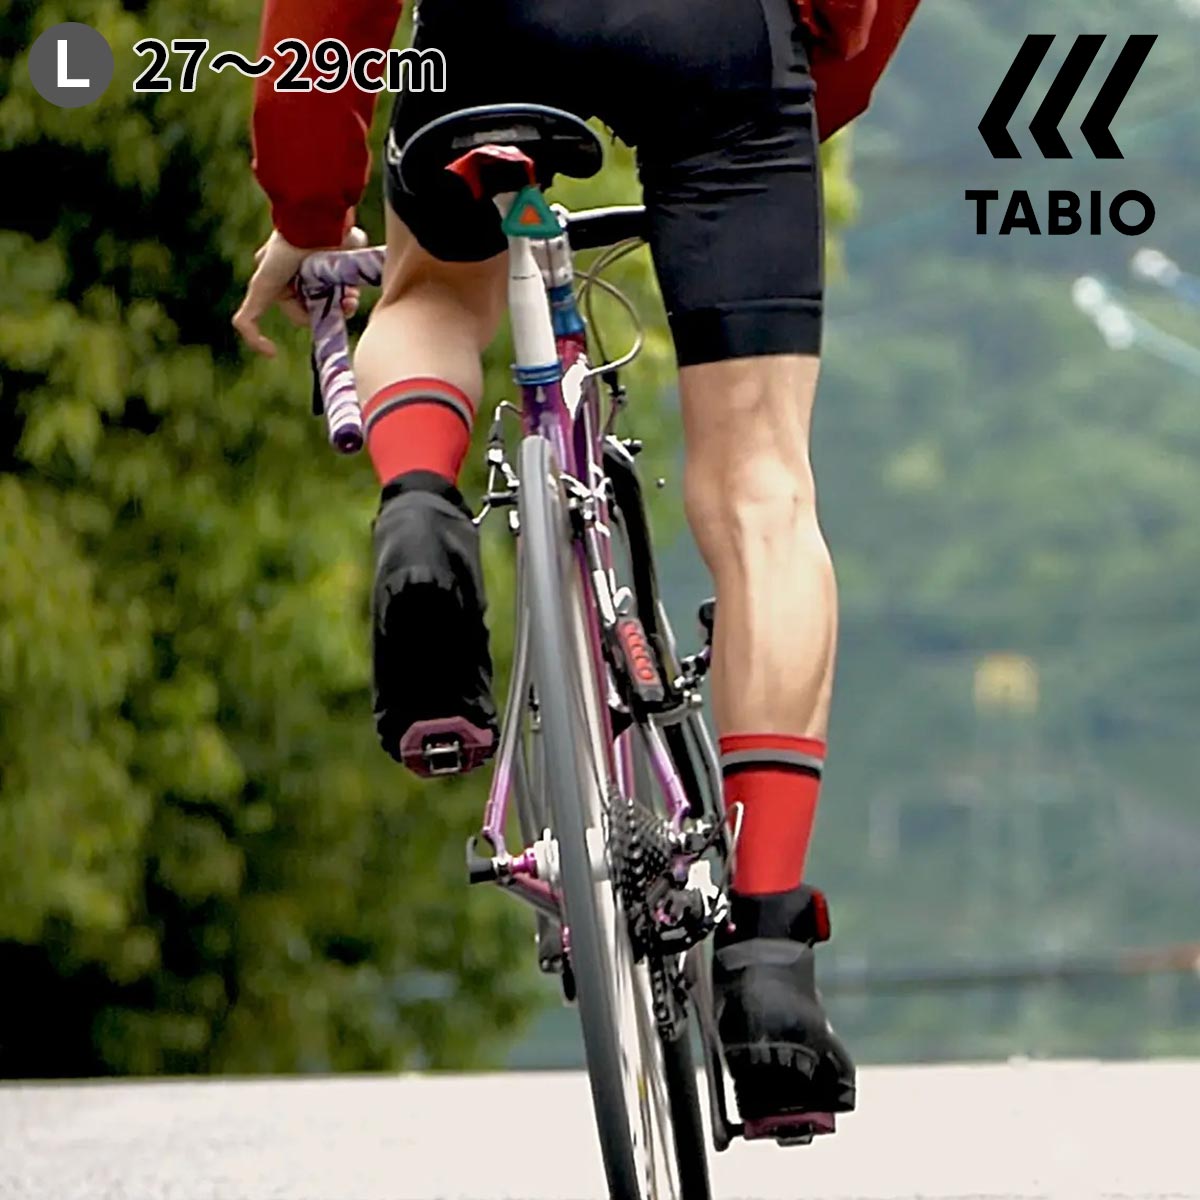  メンズ TABIO CYCLE タビオ サイクル Lサイズ / 靴下屋 靴下 タビオ タビオスポーツ くつ下 自転車 サイクル サイクリングウェア クロスバイク ソックス 白 父の日ギフト 日本製